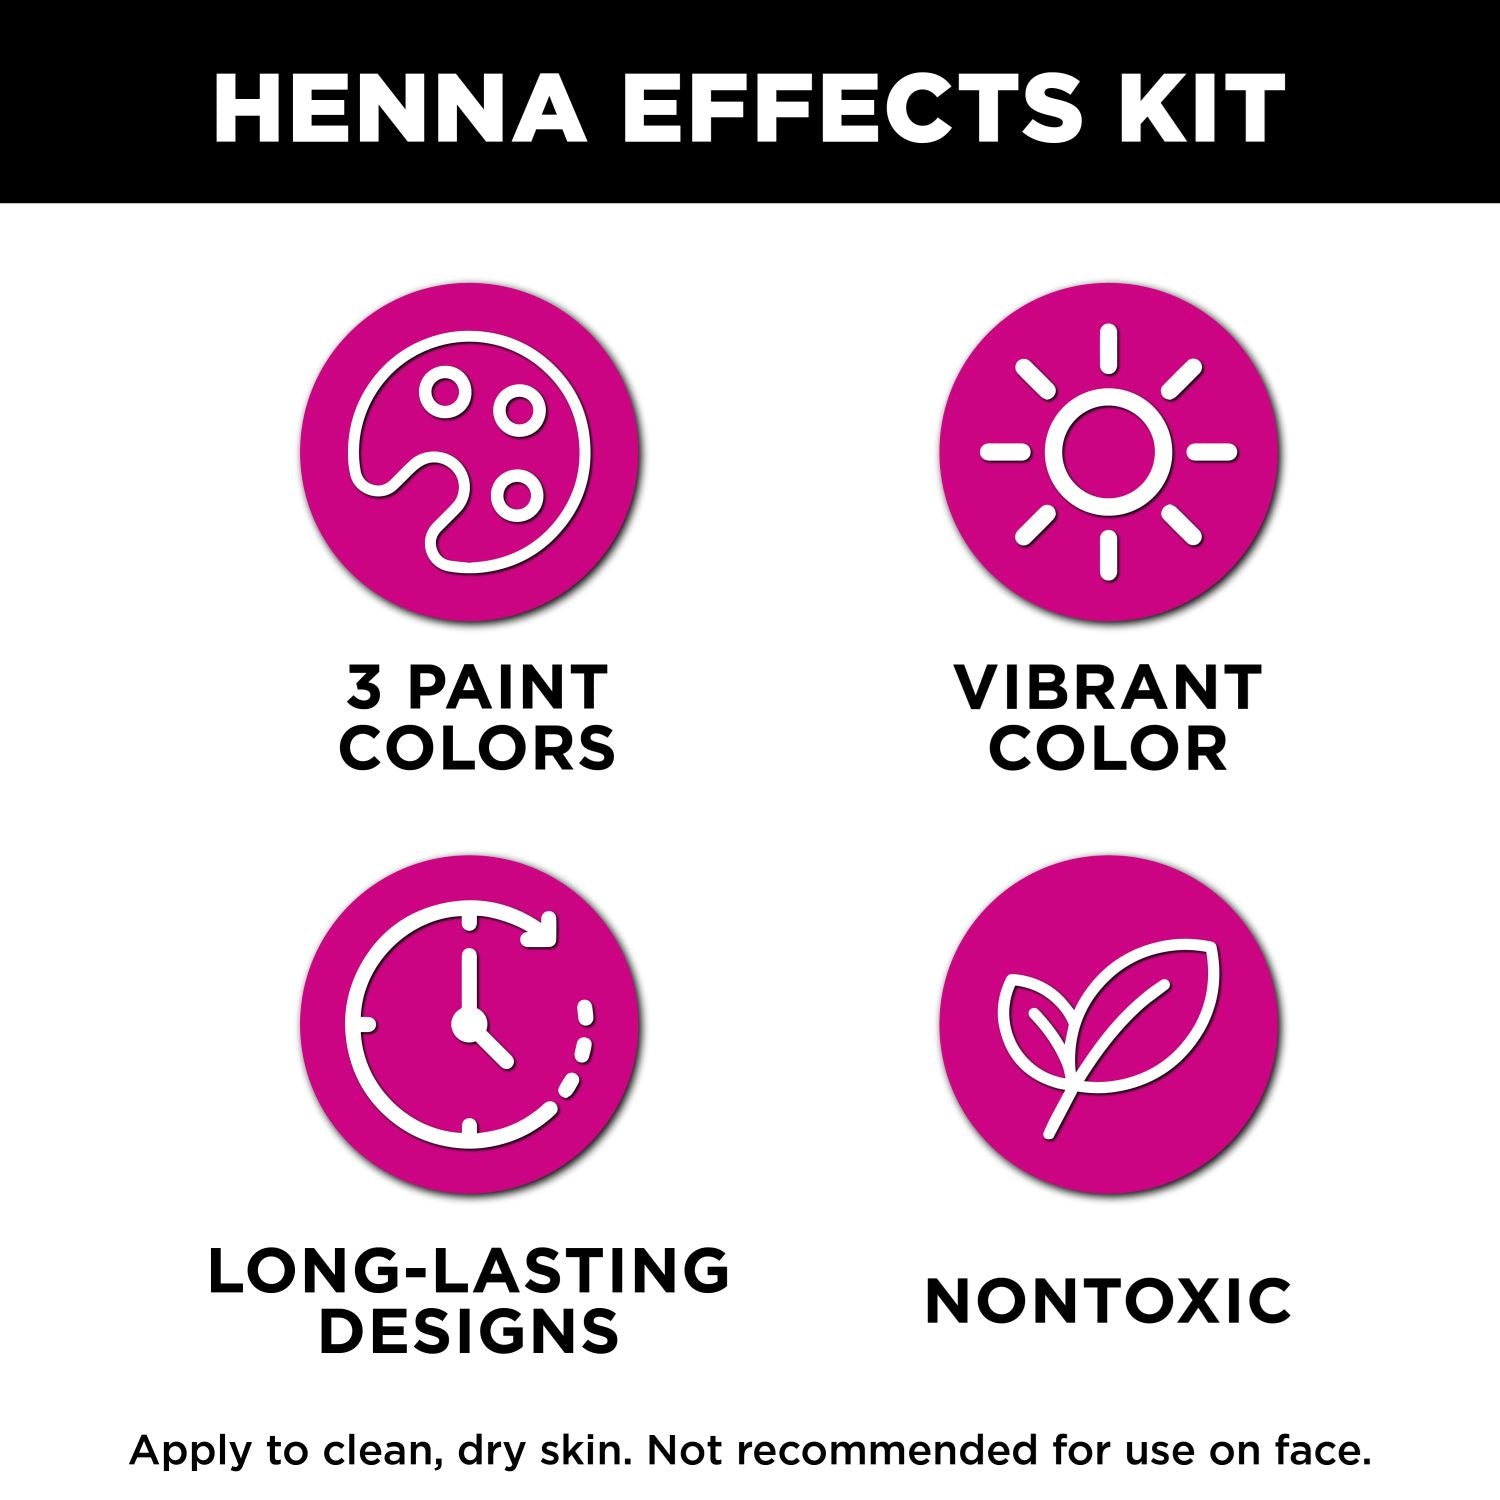 Henna Body Art Kit and eCourse – Henna Sooq